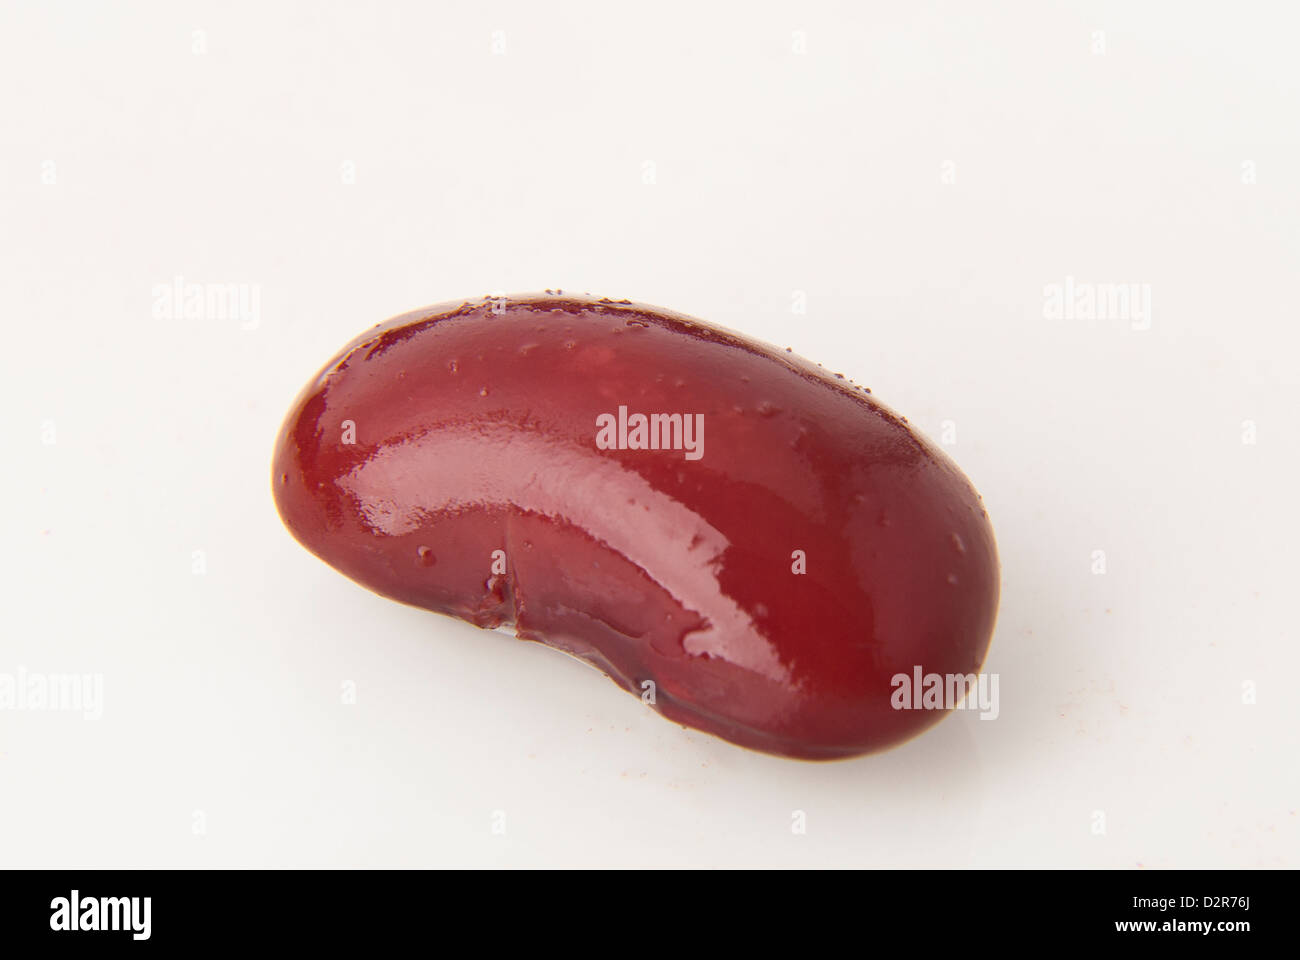 'Kidney Bean' Stock Photo